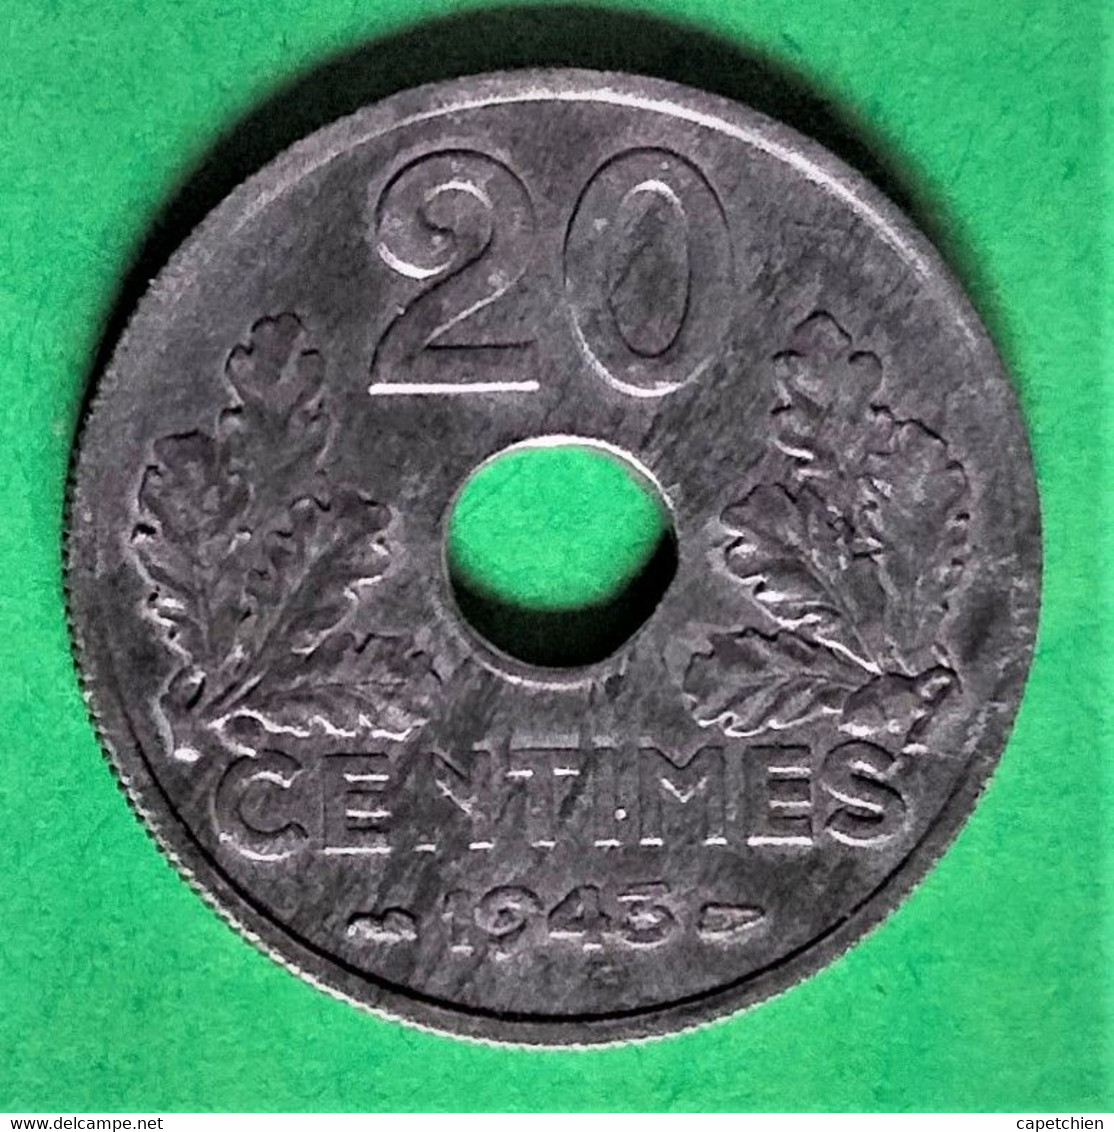 FRANCE / ETAT FRANCAIS / 20 CENTIMES / 1943 / ZINC - 20 Centimes